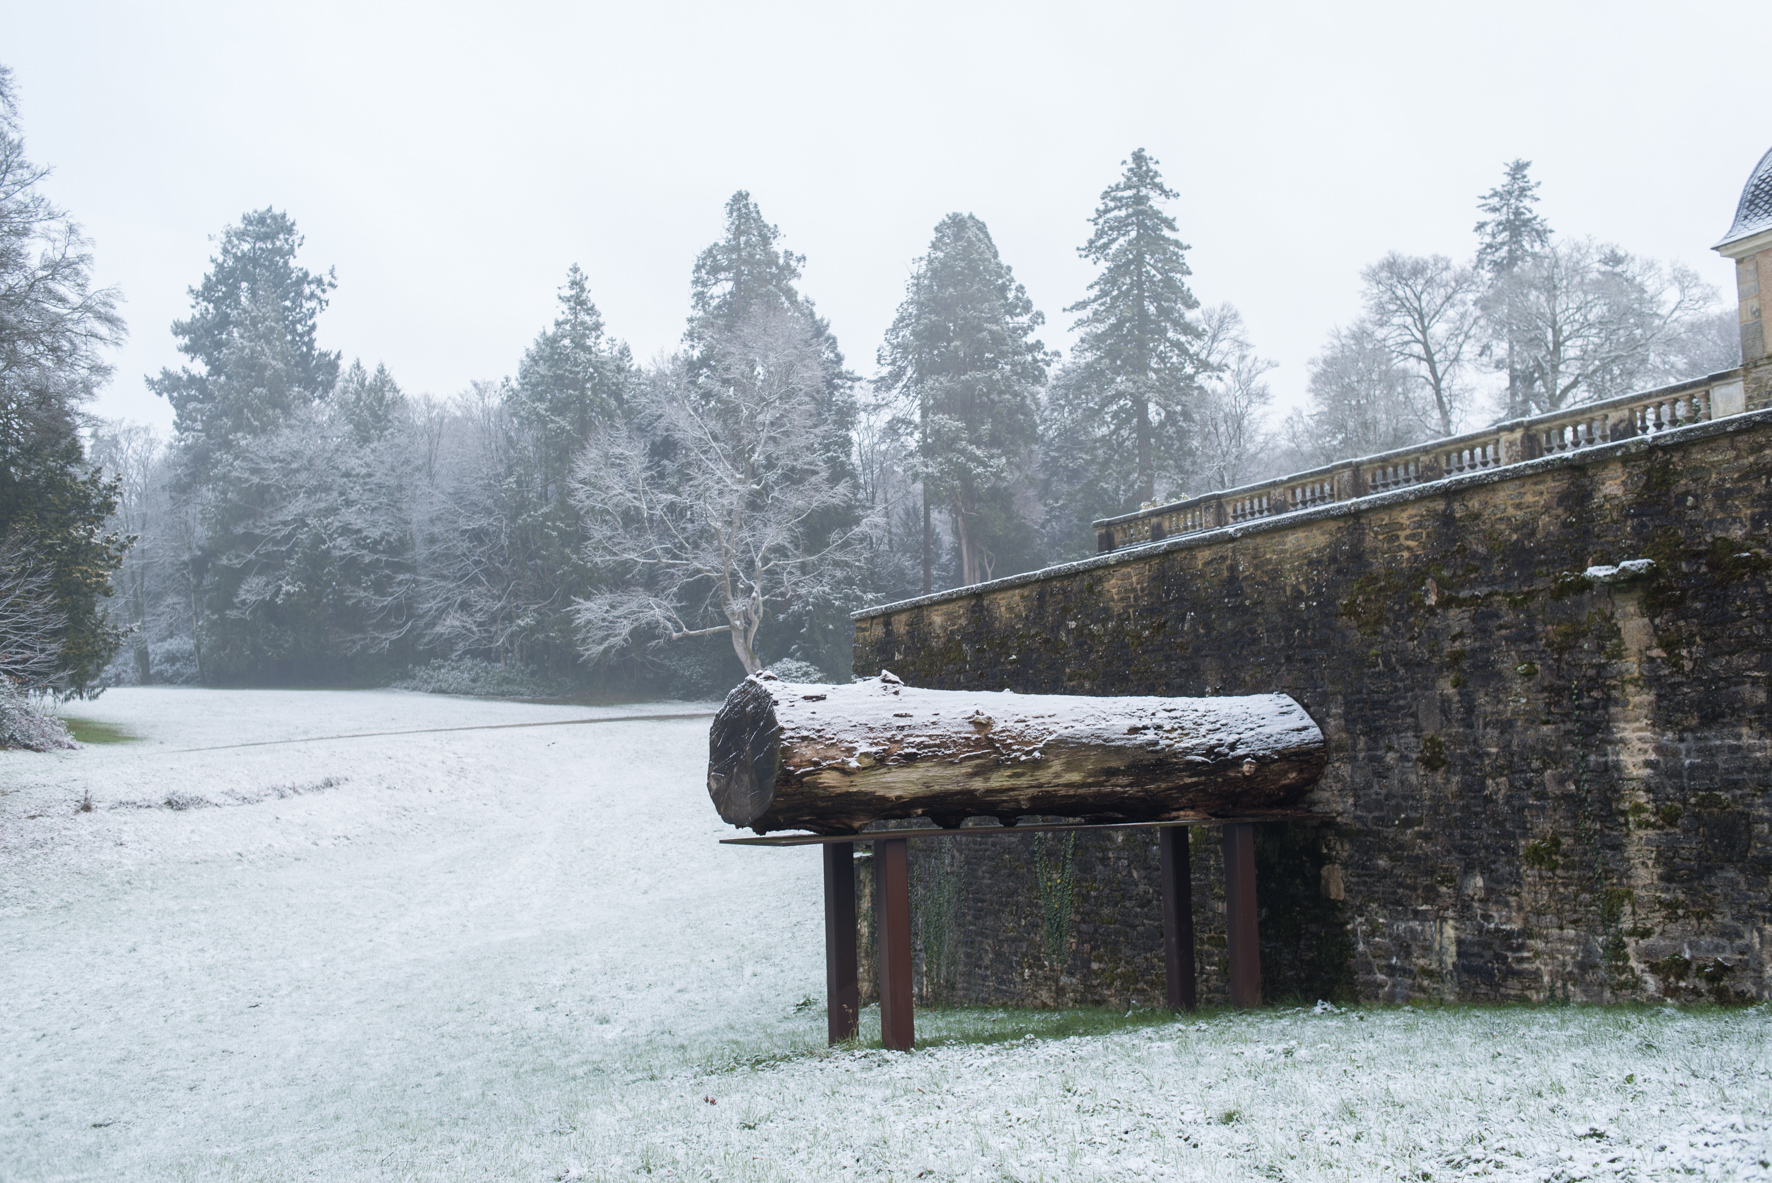 Oeuvre d'art sous la neige exposée contre un mur en pierres avec de grands arbres en arrière plan.